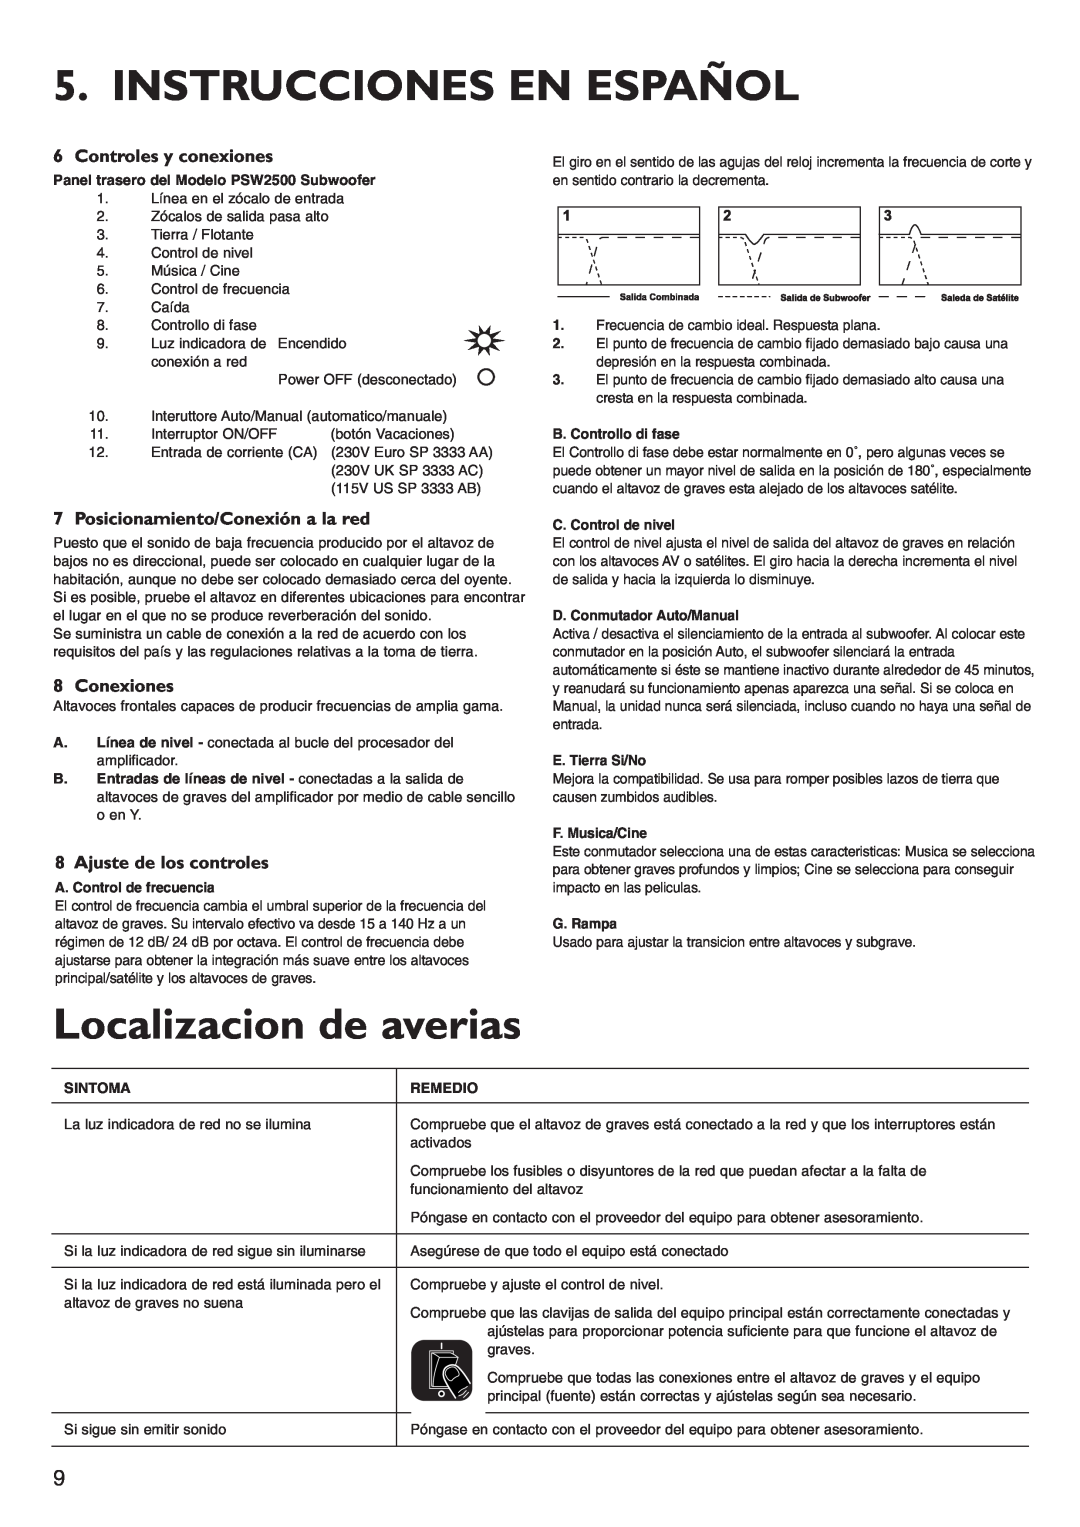 KEF Audio PSW2500 installation manual Instrucciones En Español, Localizacion de averias, Controles y conexiones, Conexiones 